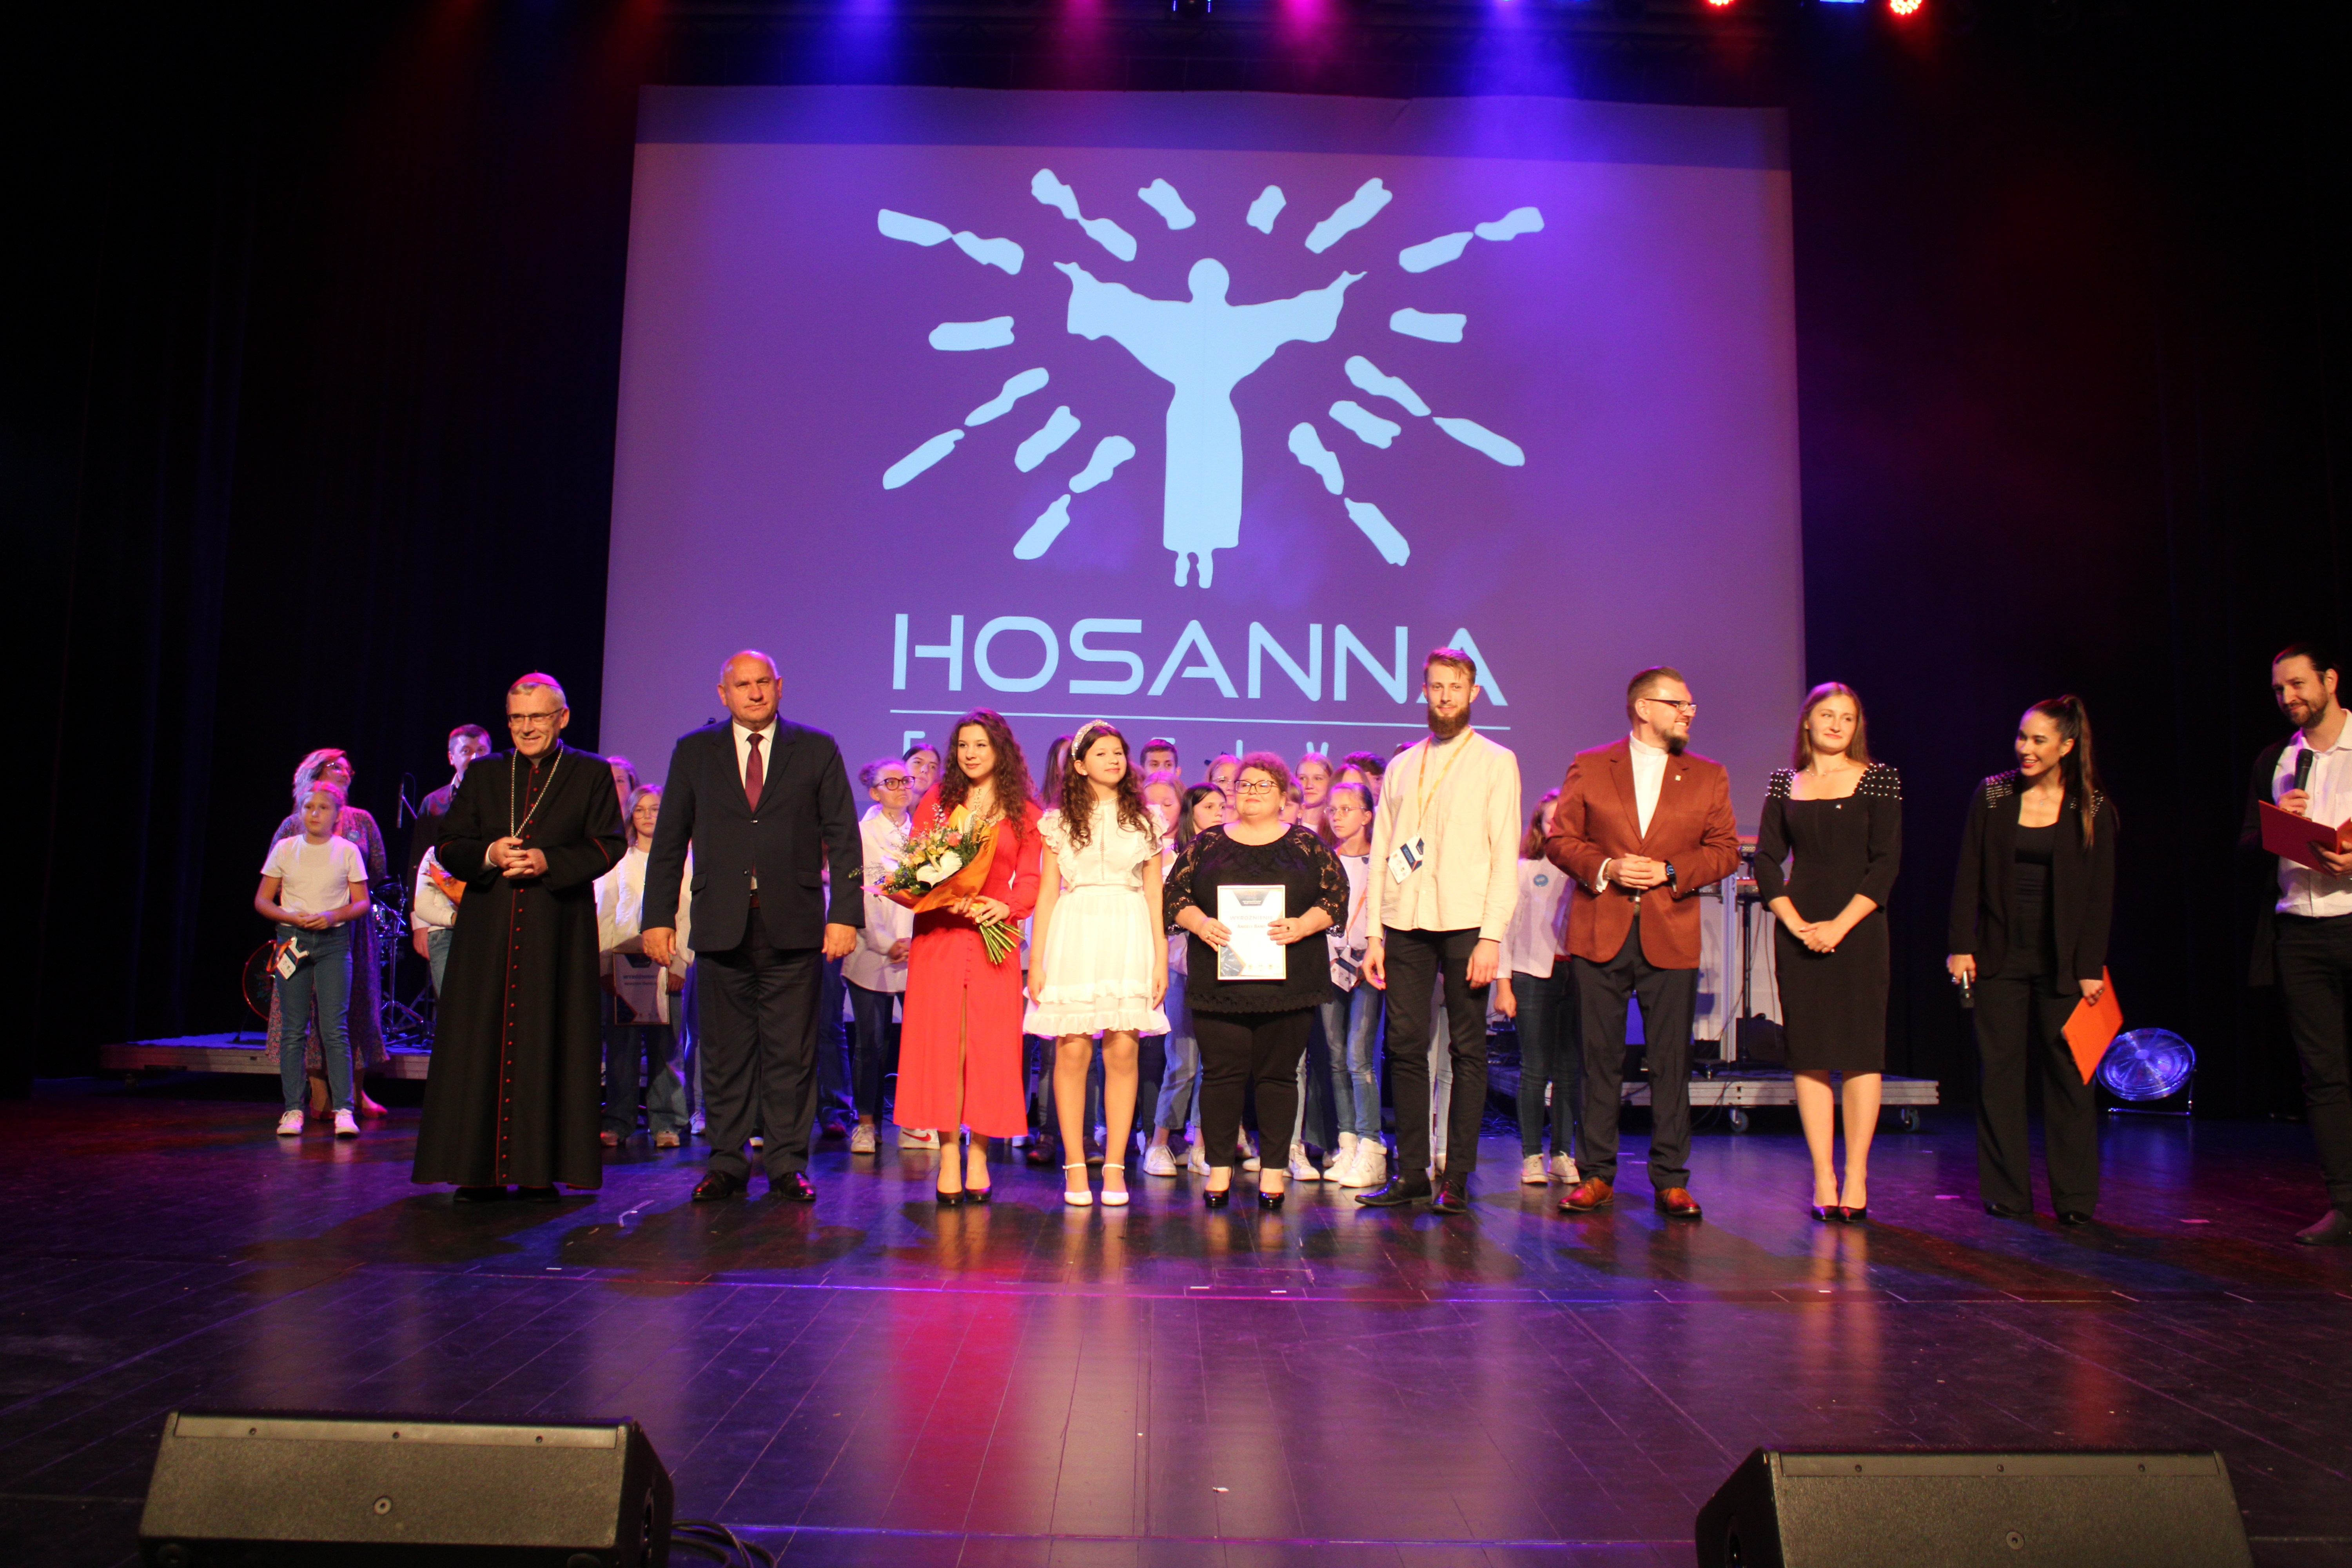 Hosanna Festival